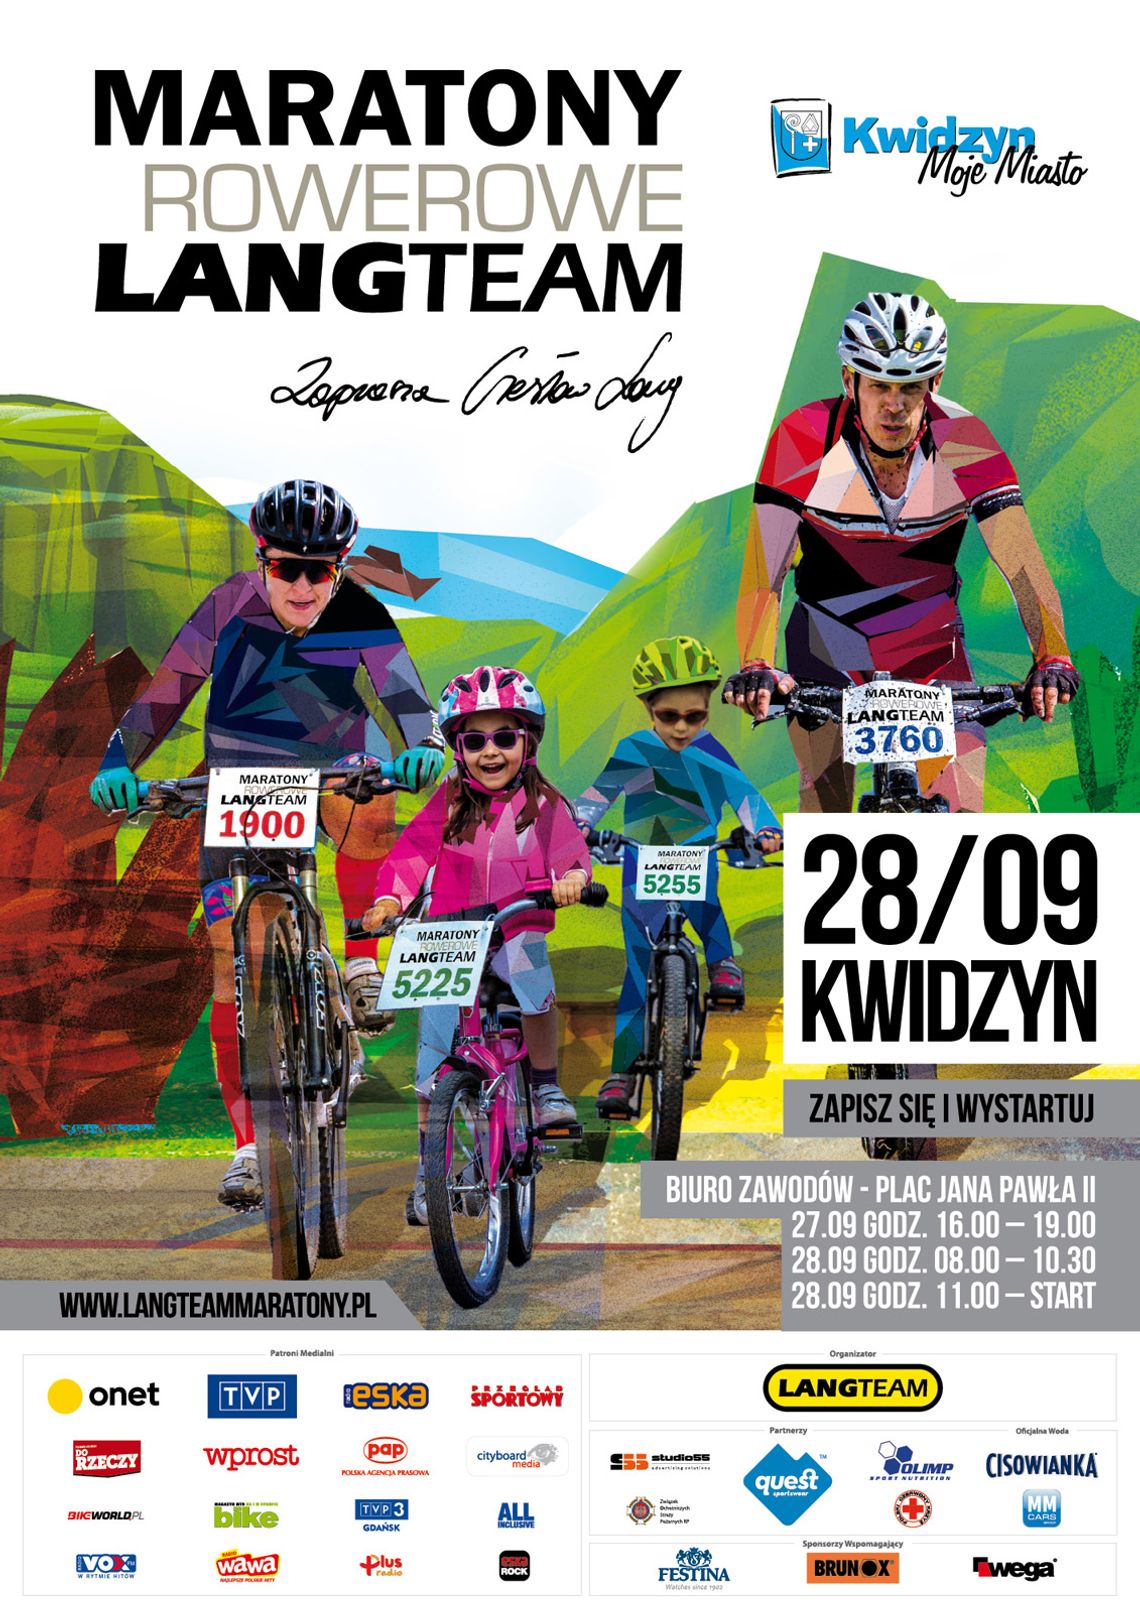 Finał Maratonów Rowerowych Lang team w Kwidzynie